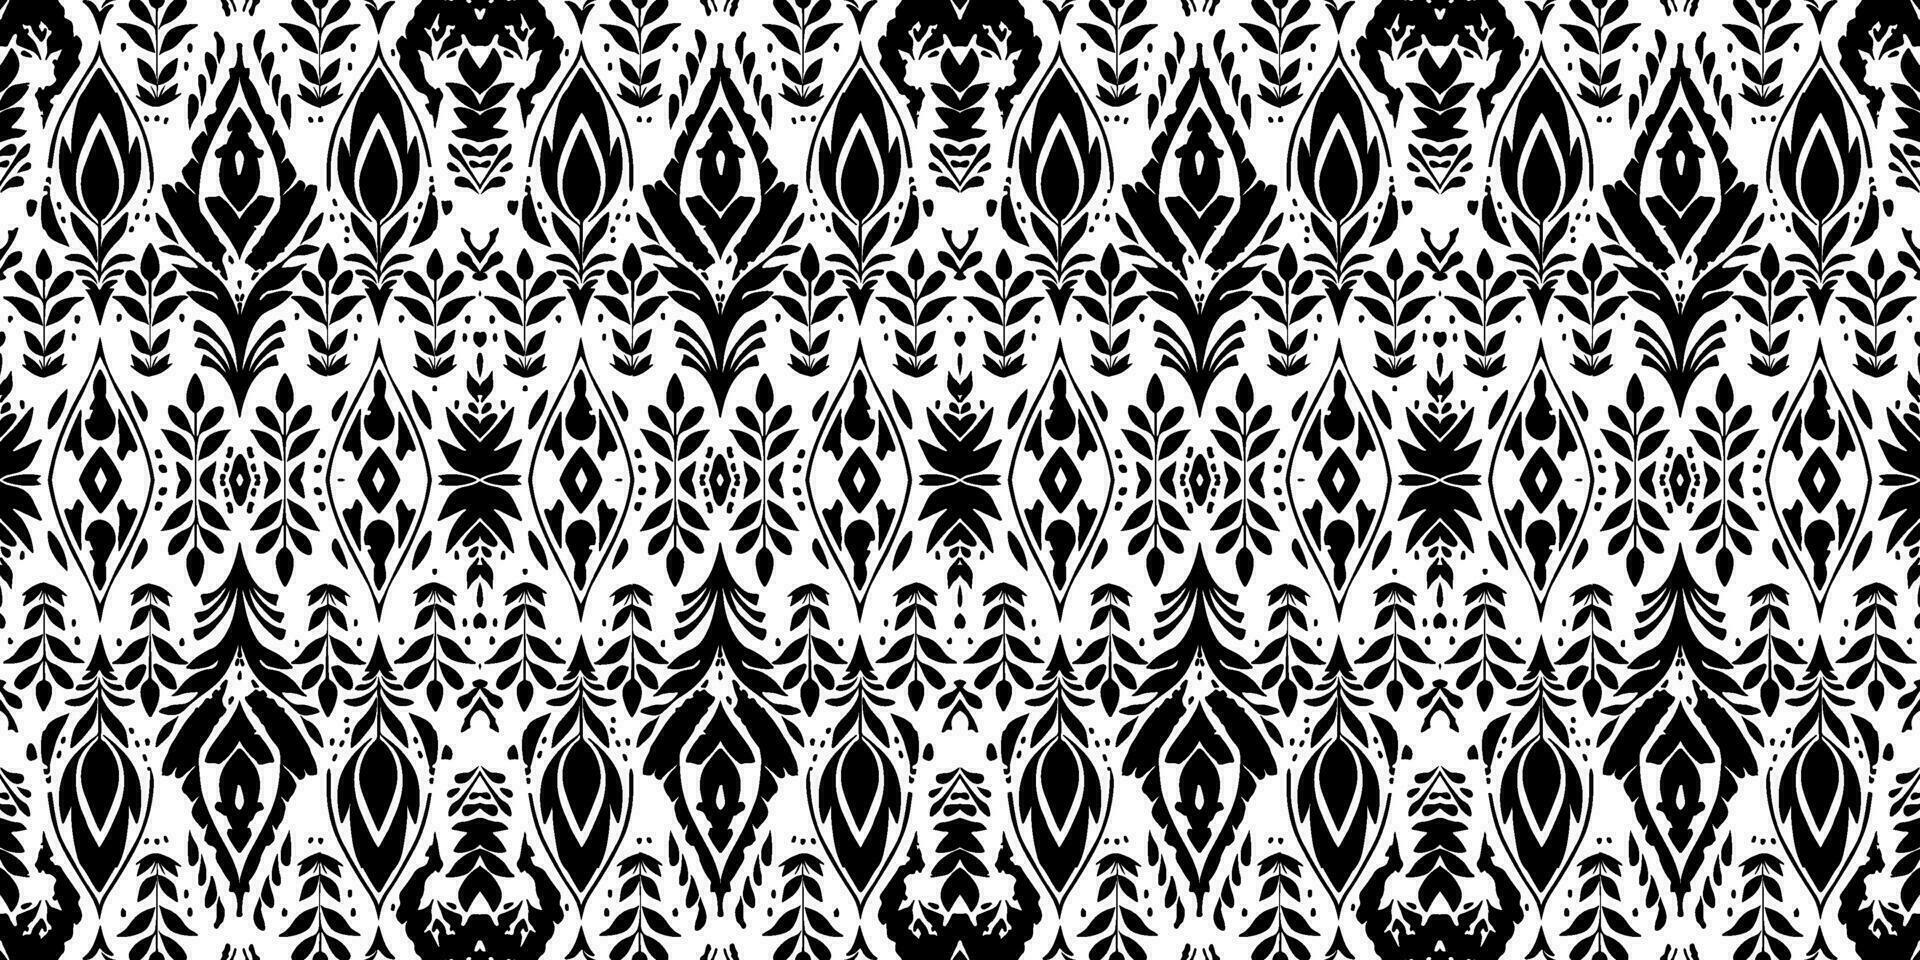 naadloos batik patroon, naadloos bloemen batik patroon, en naadloos motief patroon lijken op etnisch boho, azteeks, en ikat stijlen. ontworpen voor gebruik in satijn, behang, kleding stof, gordijn, tapijt, batik vector